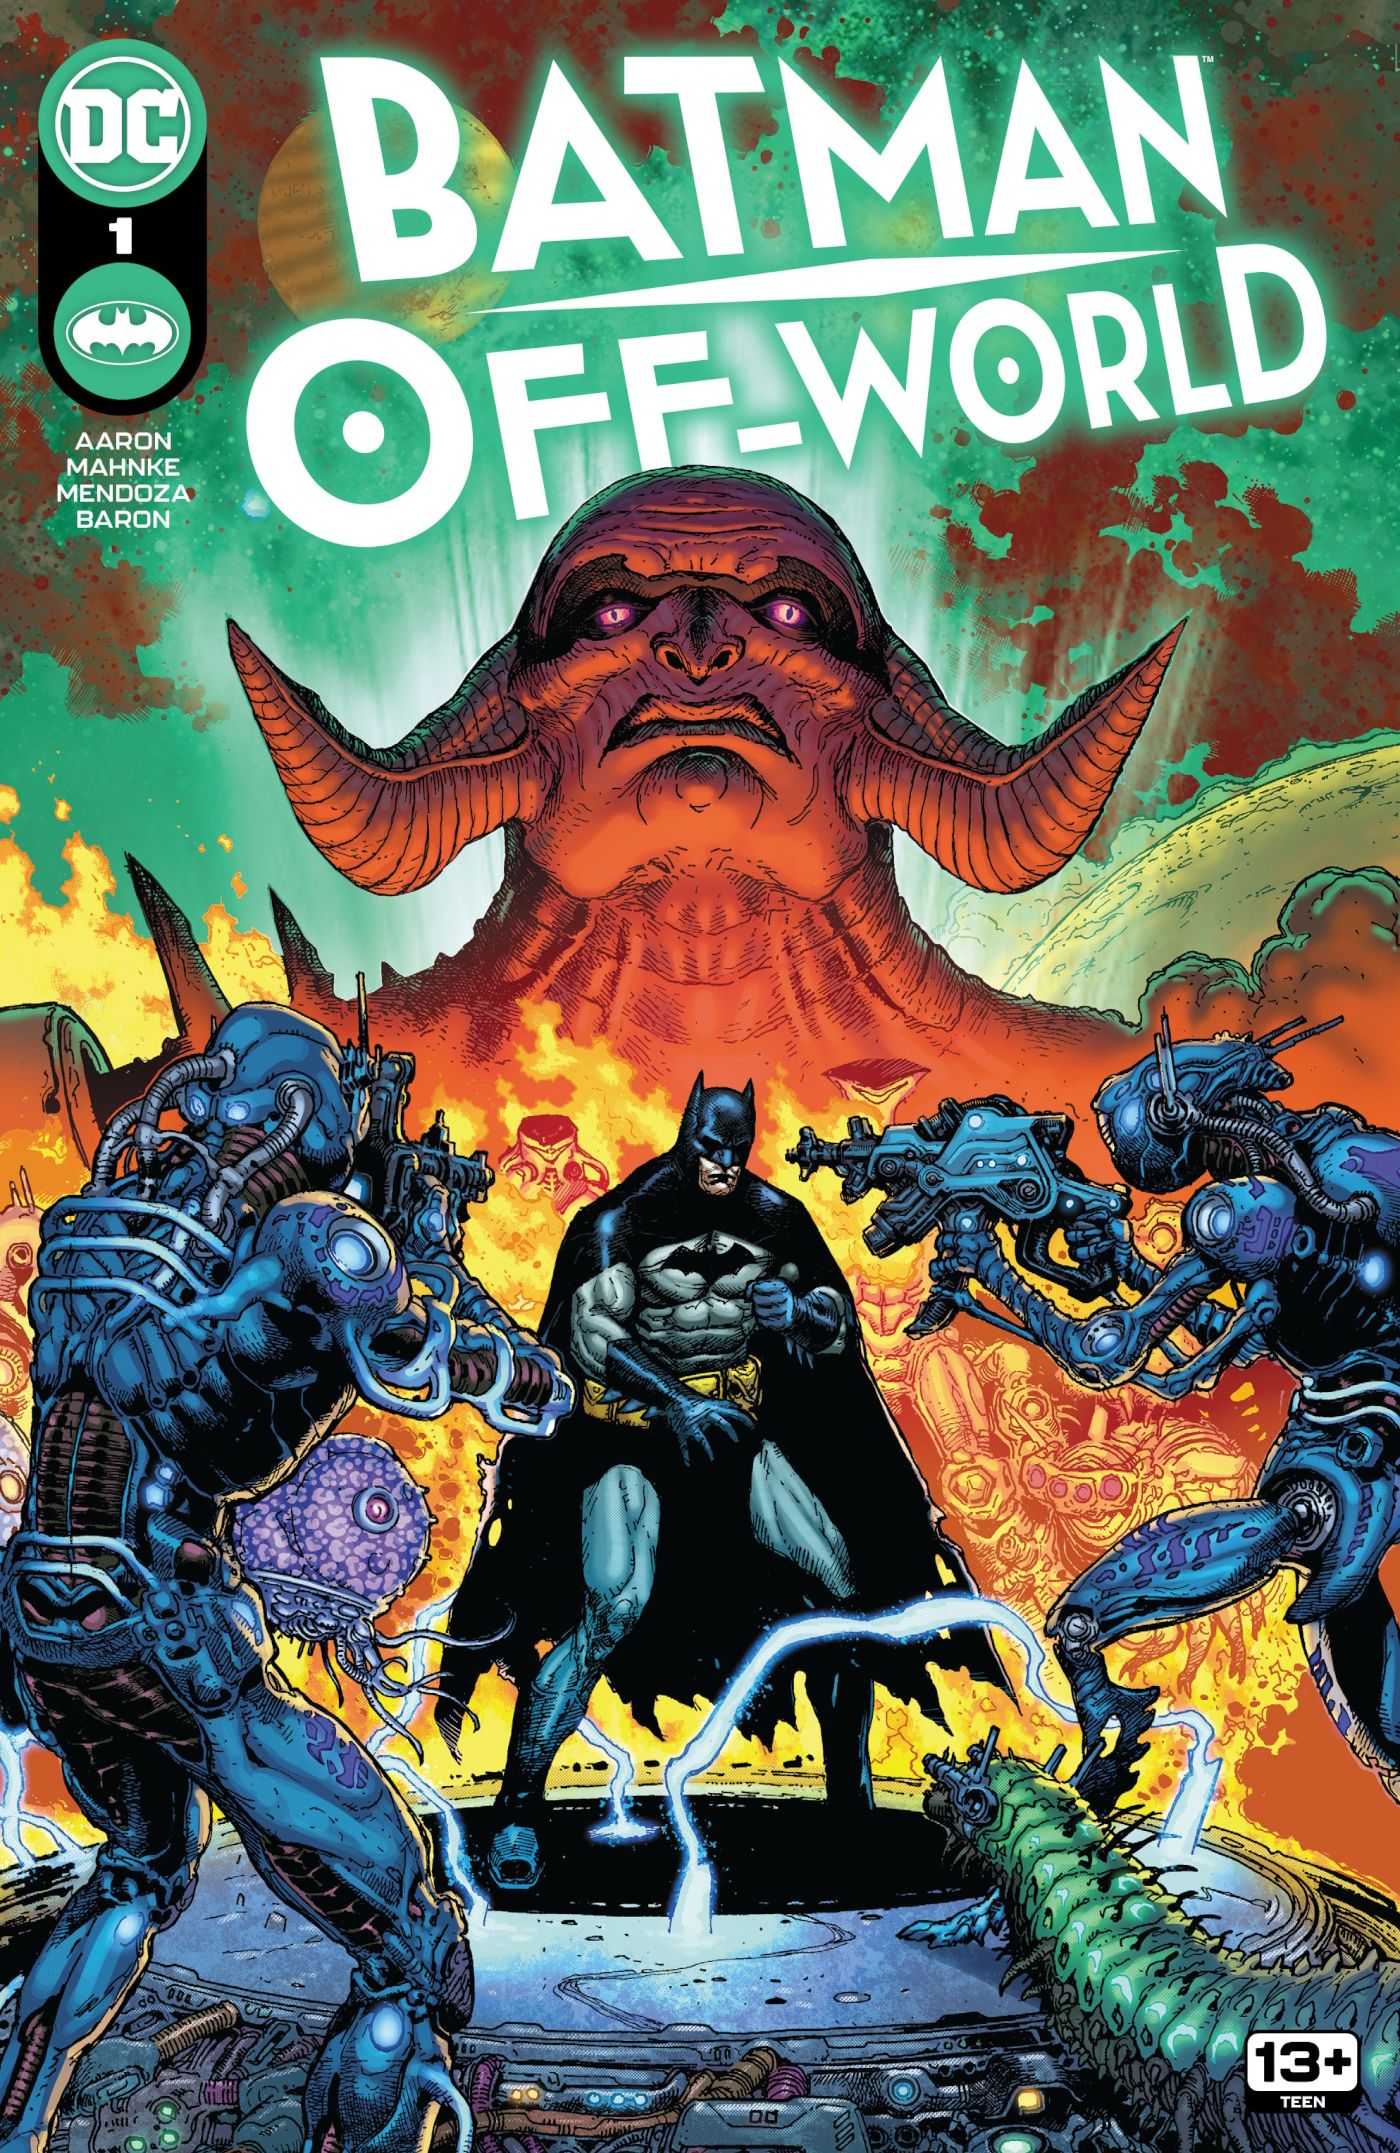 La portada de Batman Off World 1 en la que Batman está listo para luchar contra los extraterrestres.